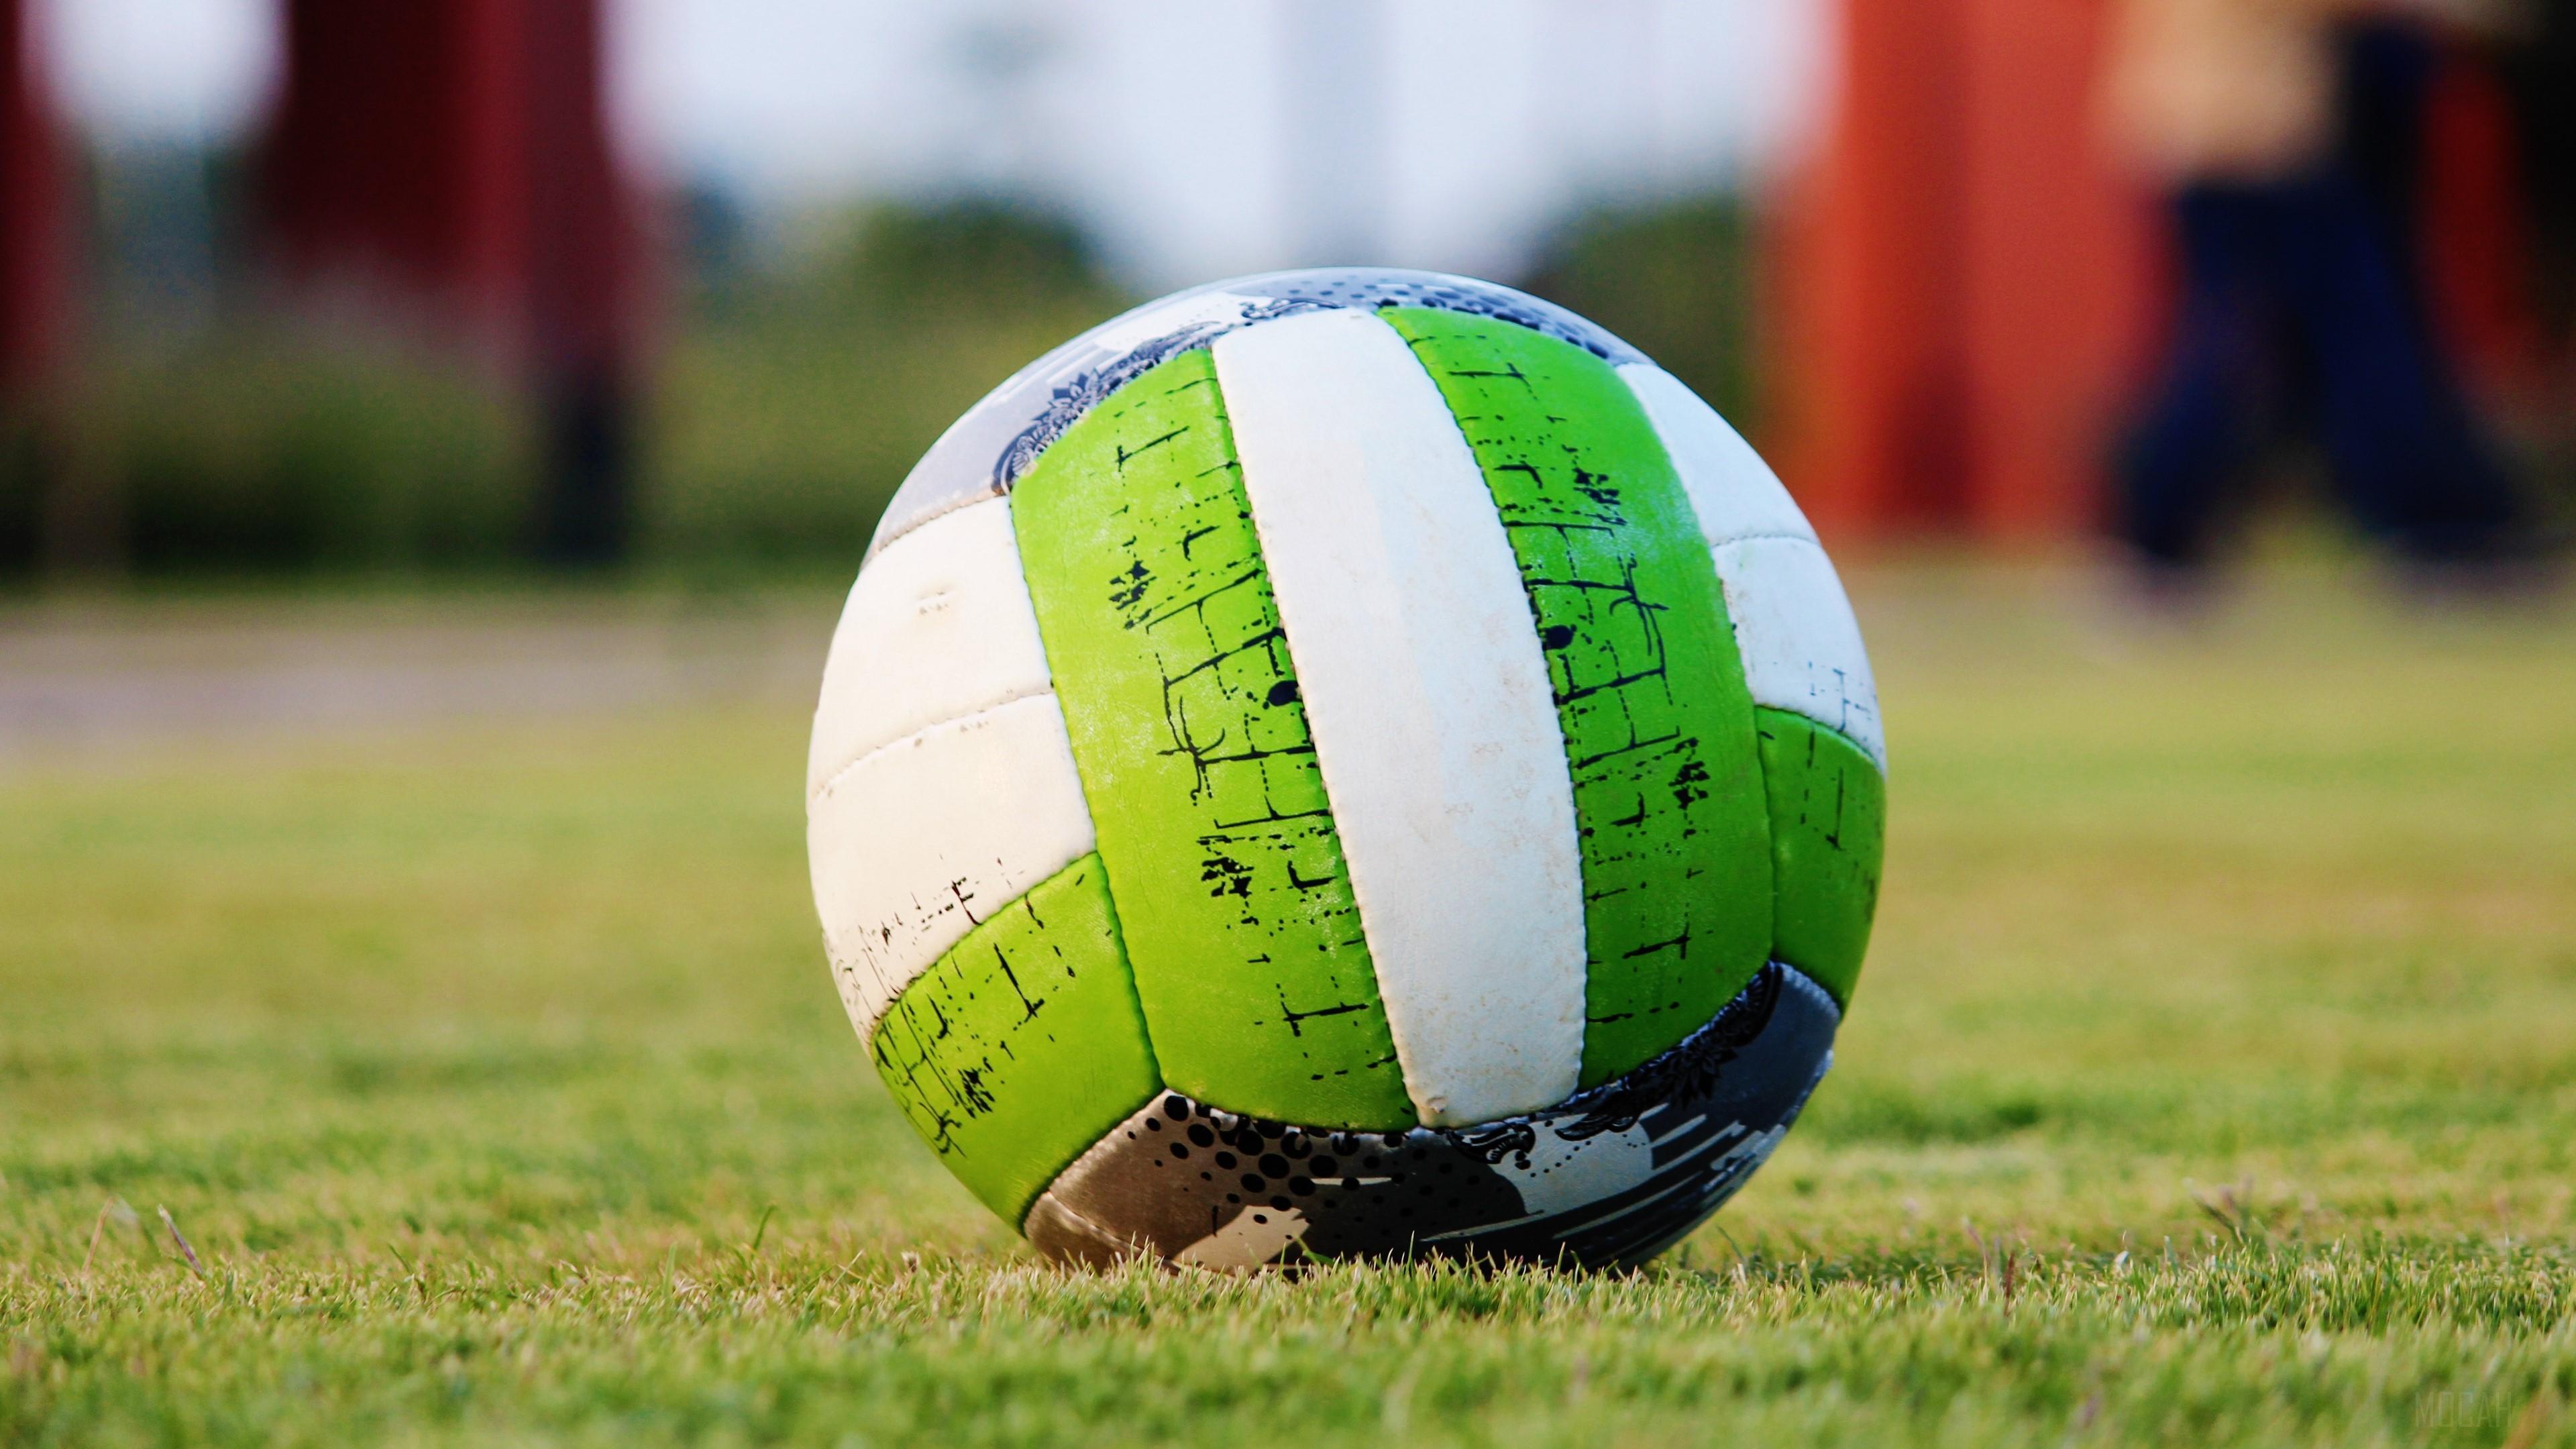 HD wallpaper, Grass, Green 4K, Soccer Ball